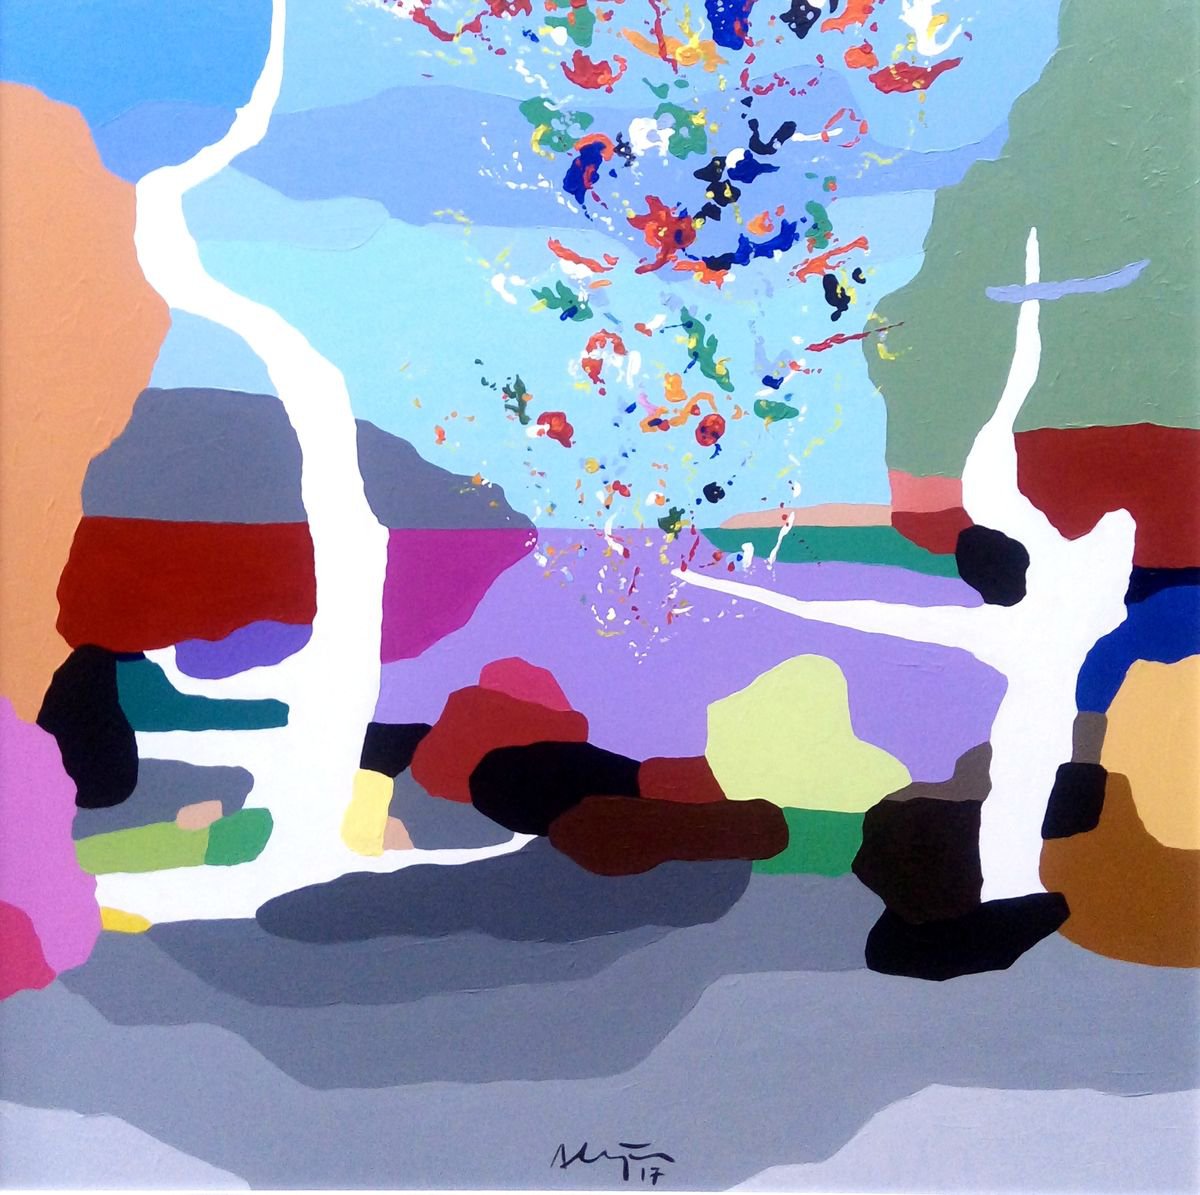 Particles (pop art, landscape) by Alejos - Pop Art landscapes